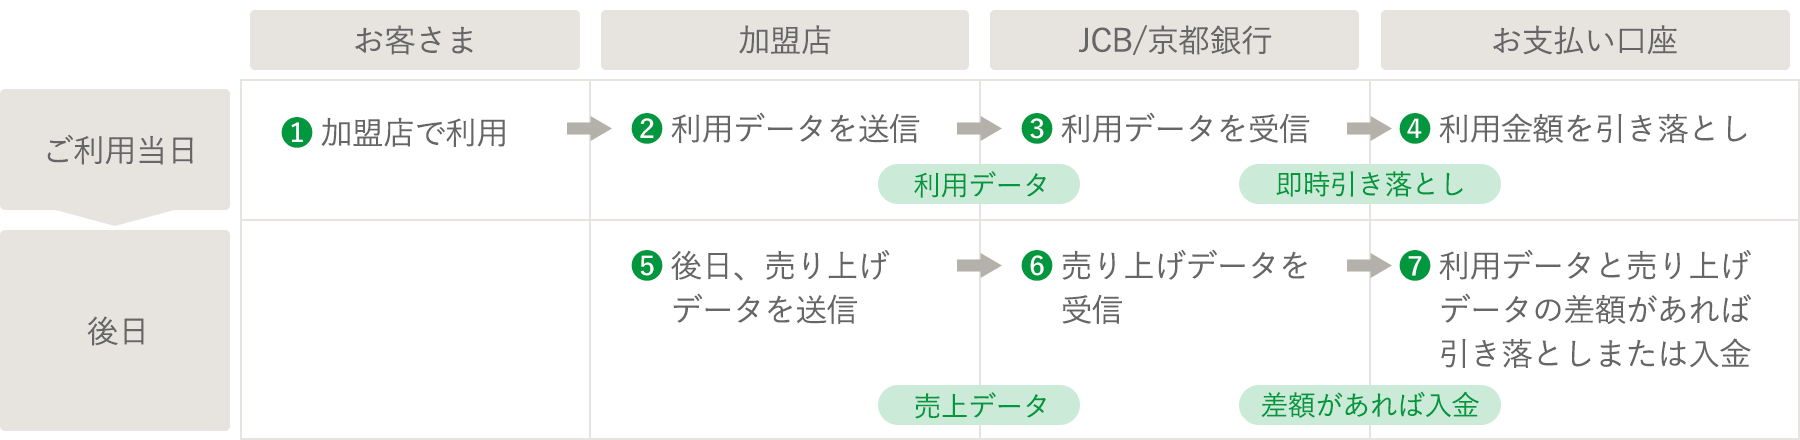 ご利用日当日にお客様が加盟店で利用したデータを加盟店に送信します。その利用データをJCB/京都銀行が受信し、お支払い口座から利用金額の即時引き落としを行います。後日加盟店がJCB/京都銀行に売り上げデータを送信し、利用データと売り上げデータの差額があれば、JCB/京都銀行がお支払い口座から引き落としまたは入金を行います。